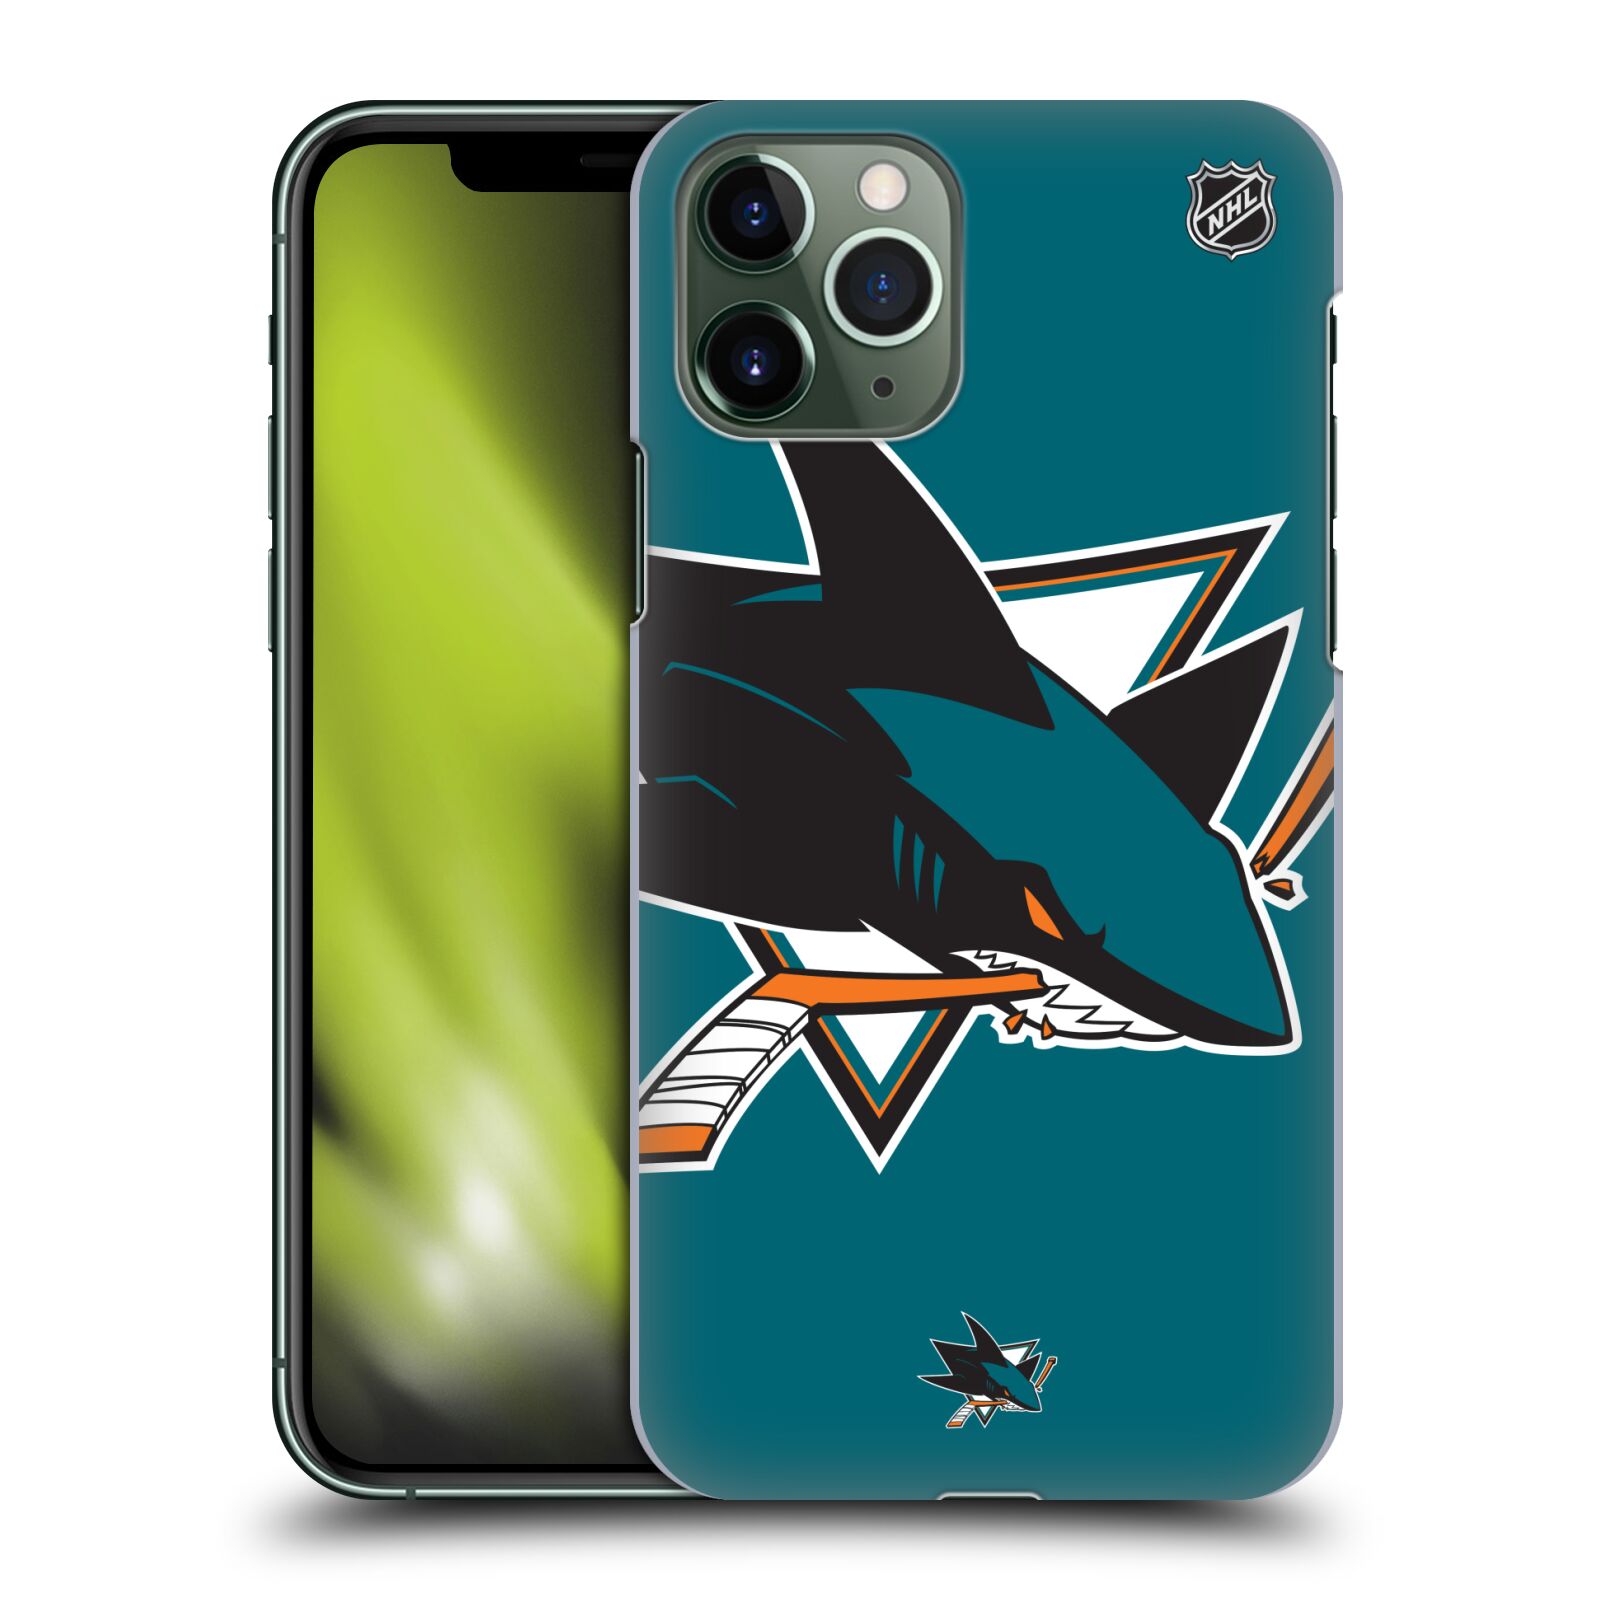 Pouzdro na mobil Apple Iphone 11 PRO - HEAD CASE - Hokej NHL - San Jose Sharks - Velký znak